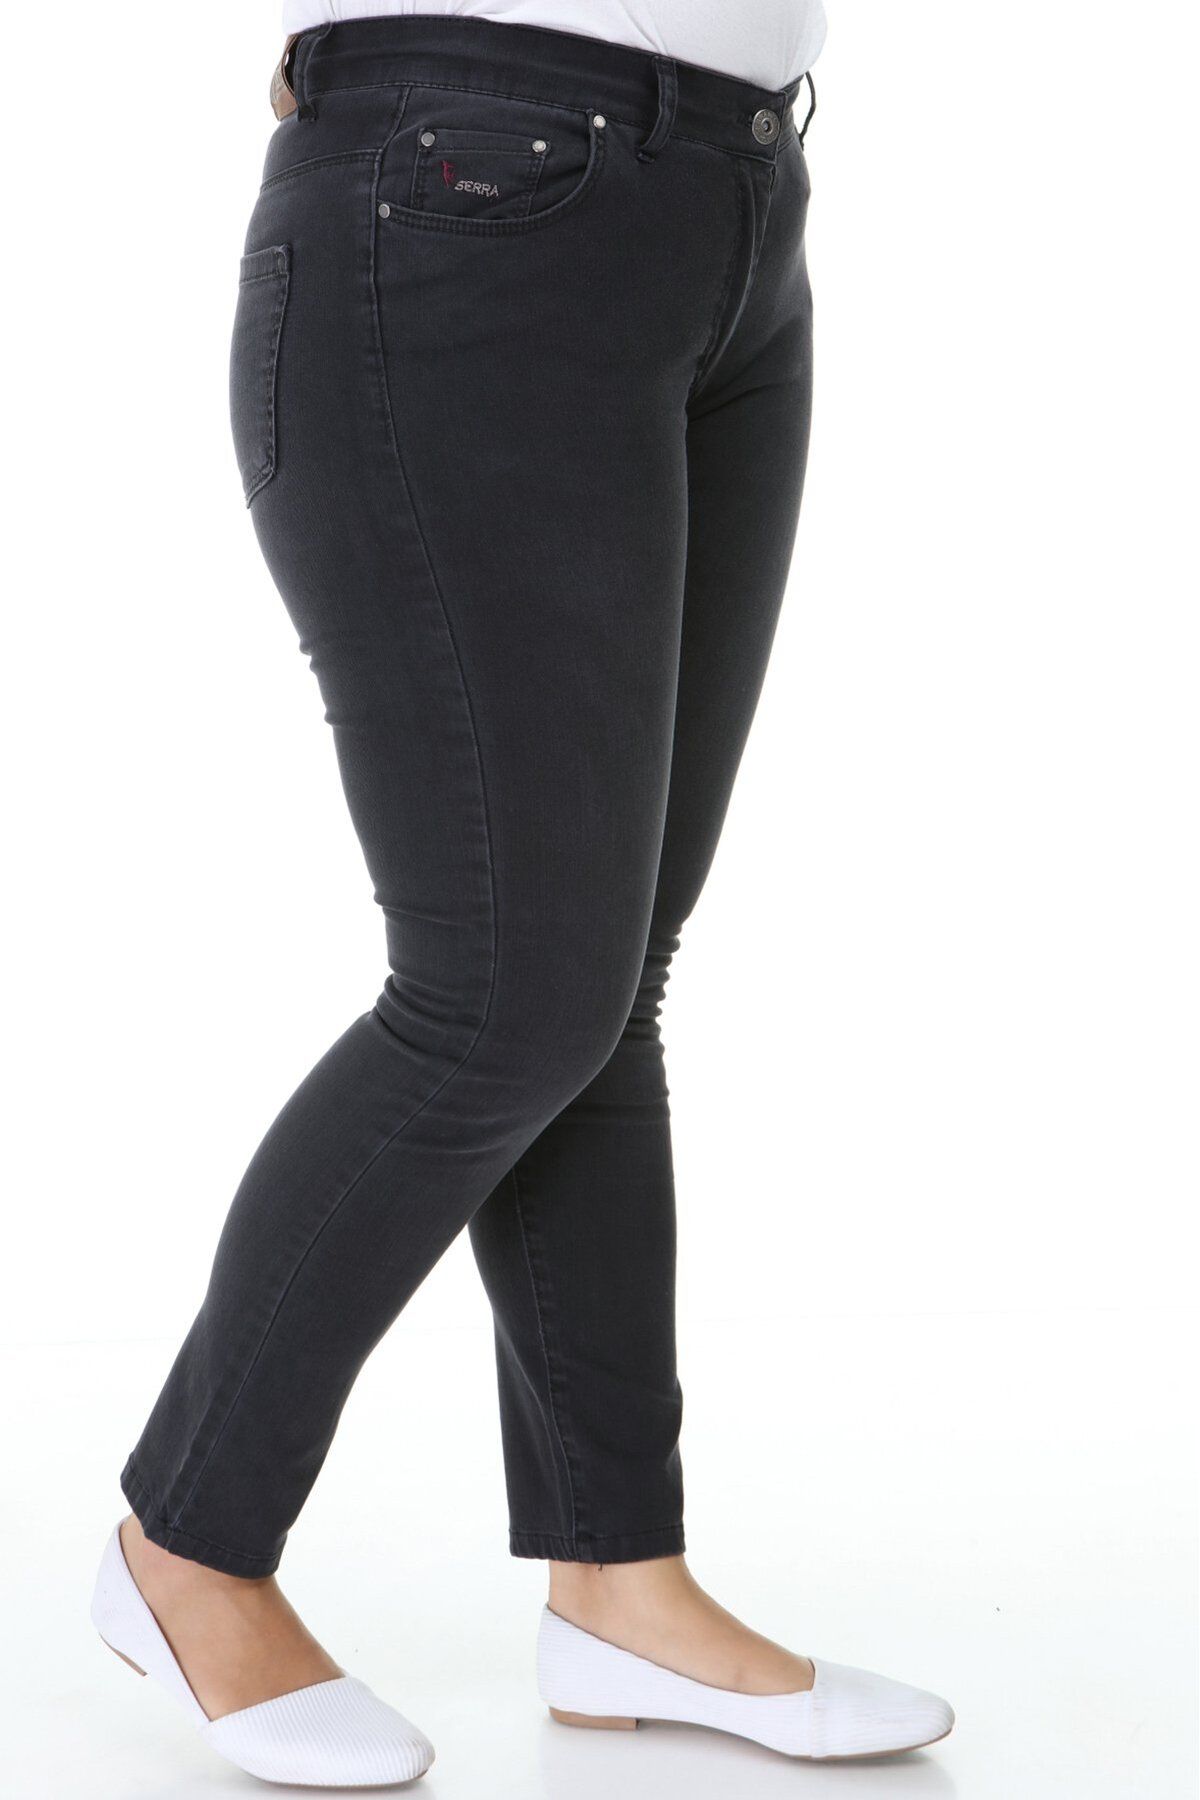 Hanezza Yüksek Bel Likralı Kot Pantolon - Slim Fit Tasarımıyla Şıklık